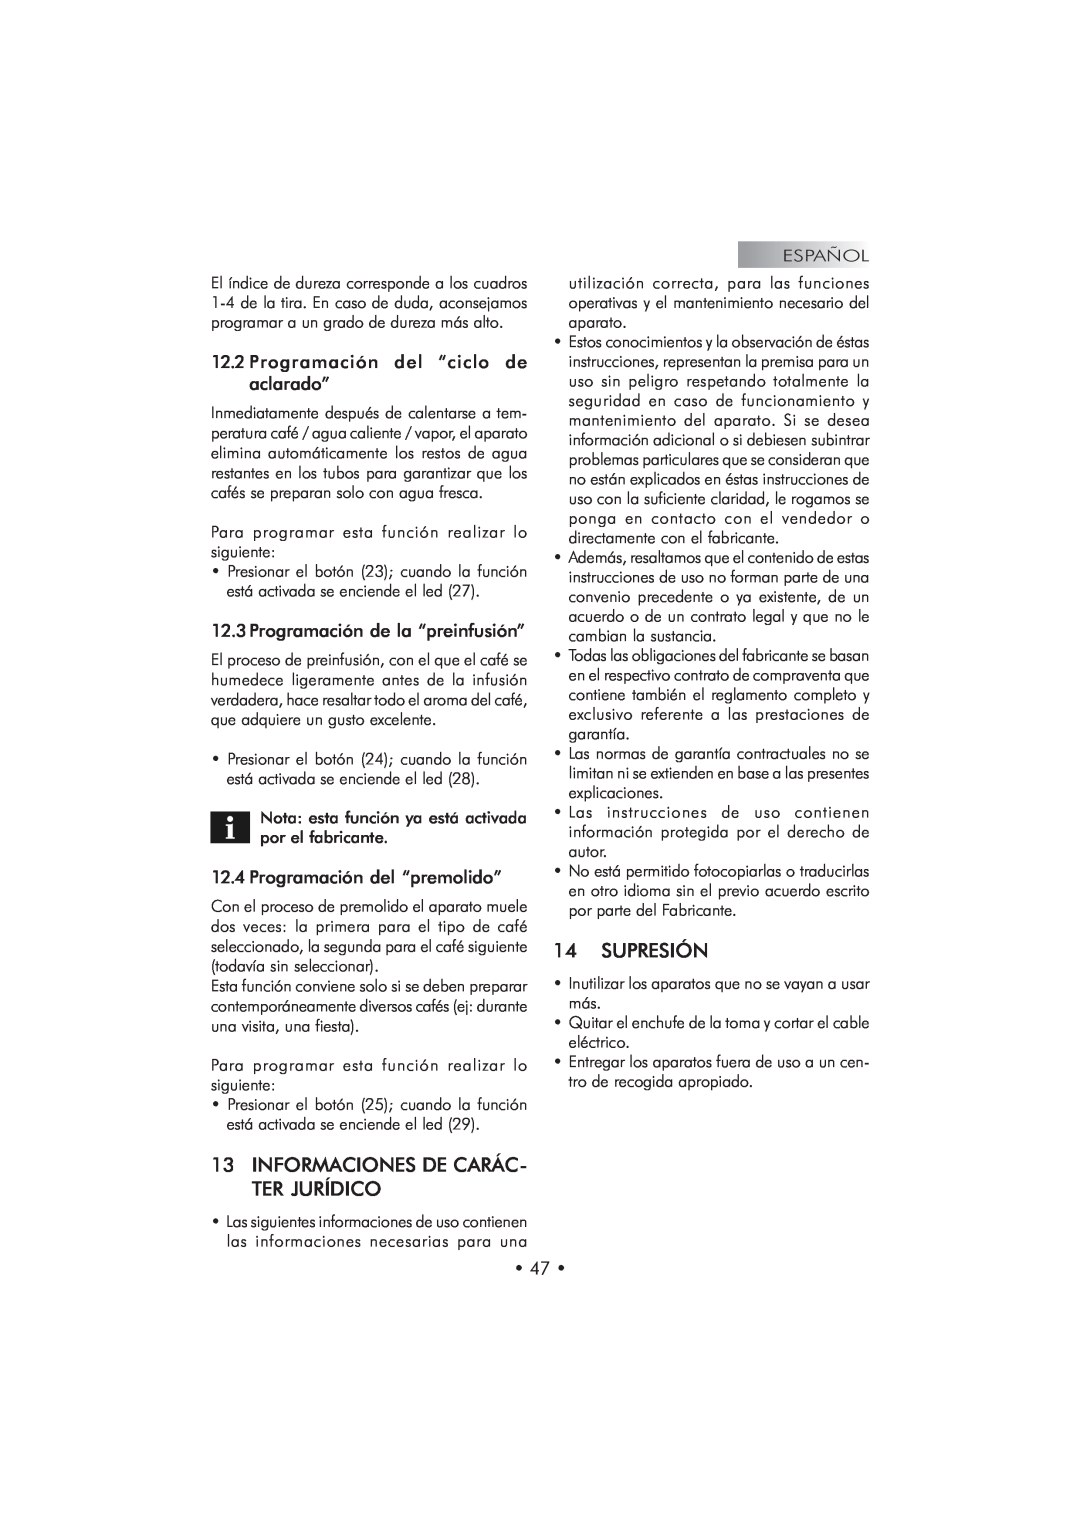 Saeco Coffee Makers SUP 025 PYR manual 13INFORMACIONES DE CARÁC- TER JURÍDICO, Supresión, Programación de la “preinfusión” 